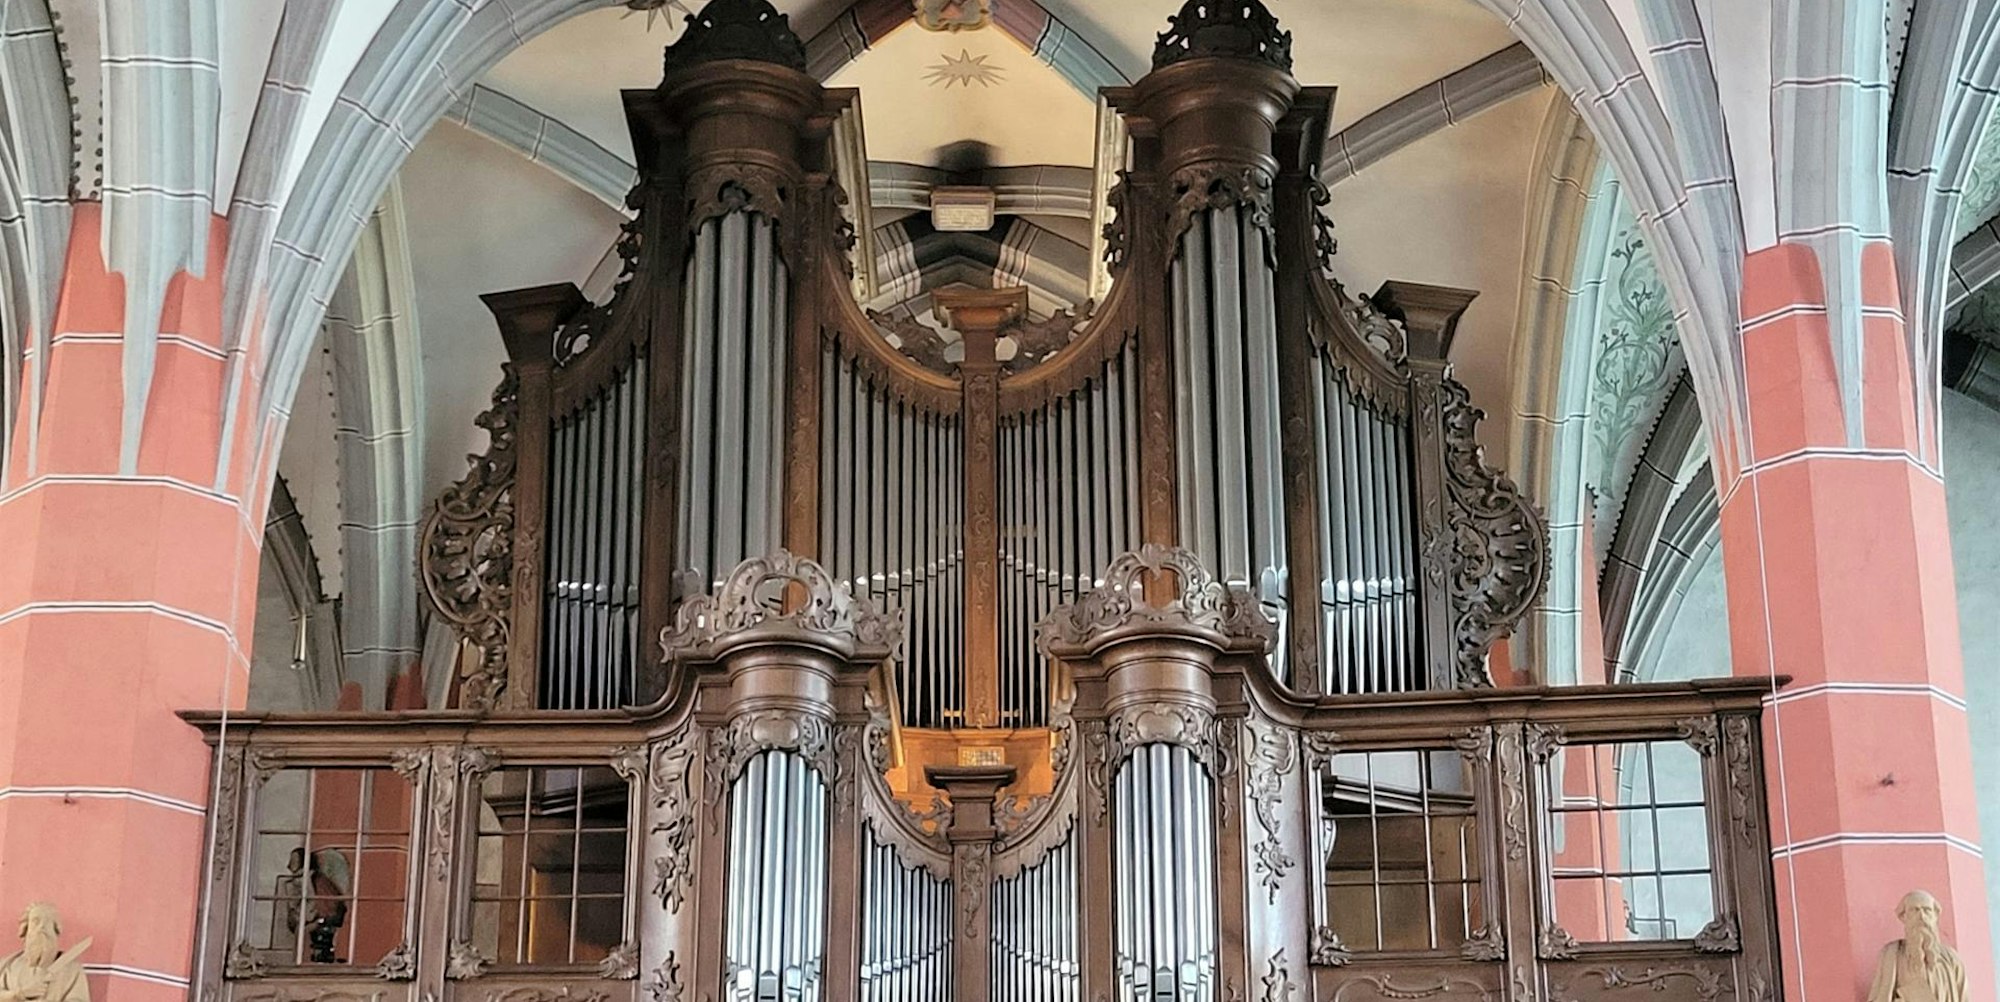 Ein Hingucker: Die Orgel in der Schlosskirche ist ein beeindruckendes Zeugnis rheinischer Orgelbaukunst im Barock.